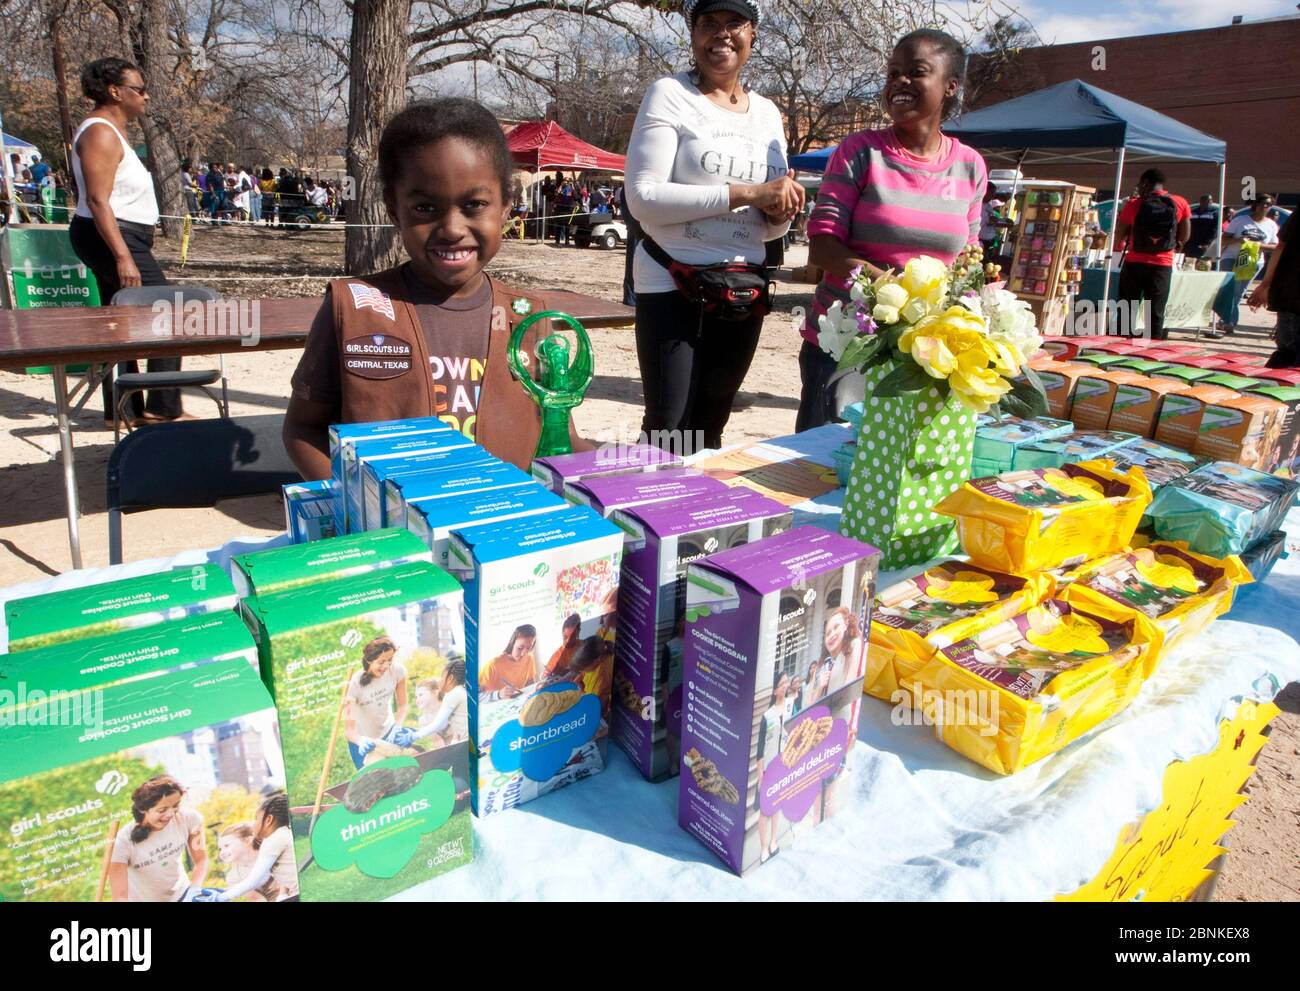 Austin Texas Etats-Unis, 21 janvier 2013: Jeune scout de fille noire met en vente ses biscuits scouts de fille à un festival en plein air sur un petit campus universitaire sur le Martin Luther King Jr anniversaire vacances. Banque D'Images